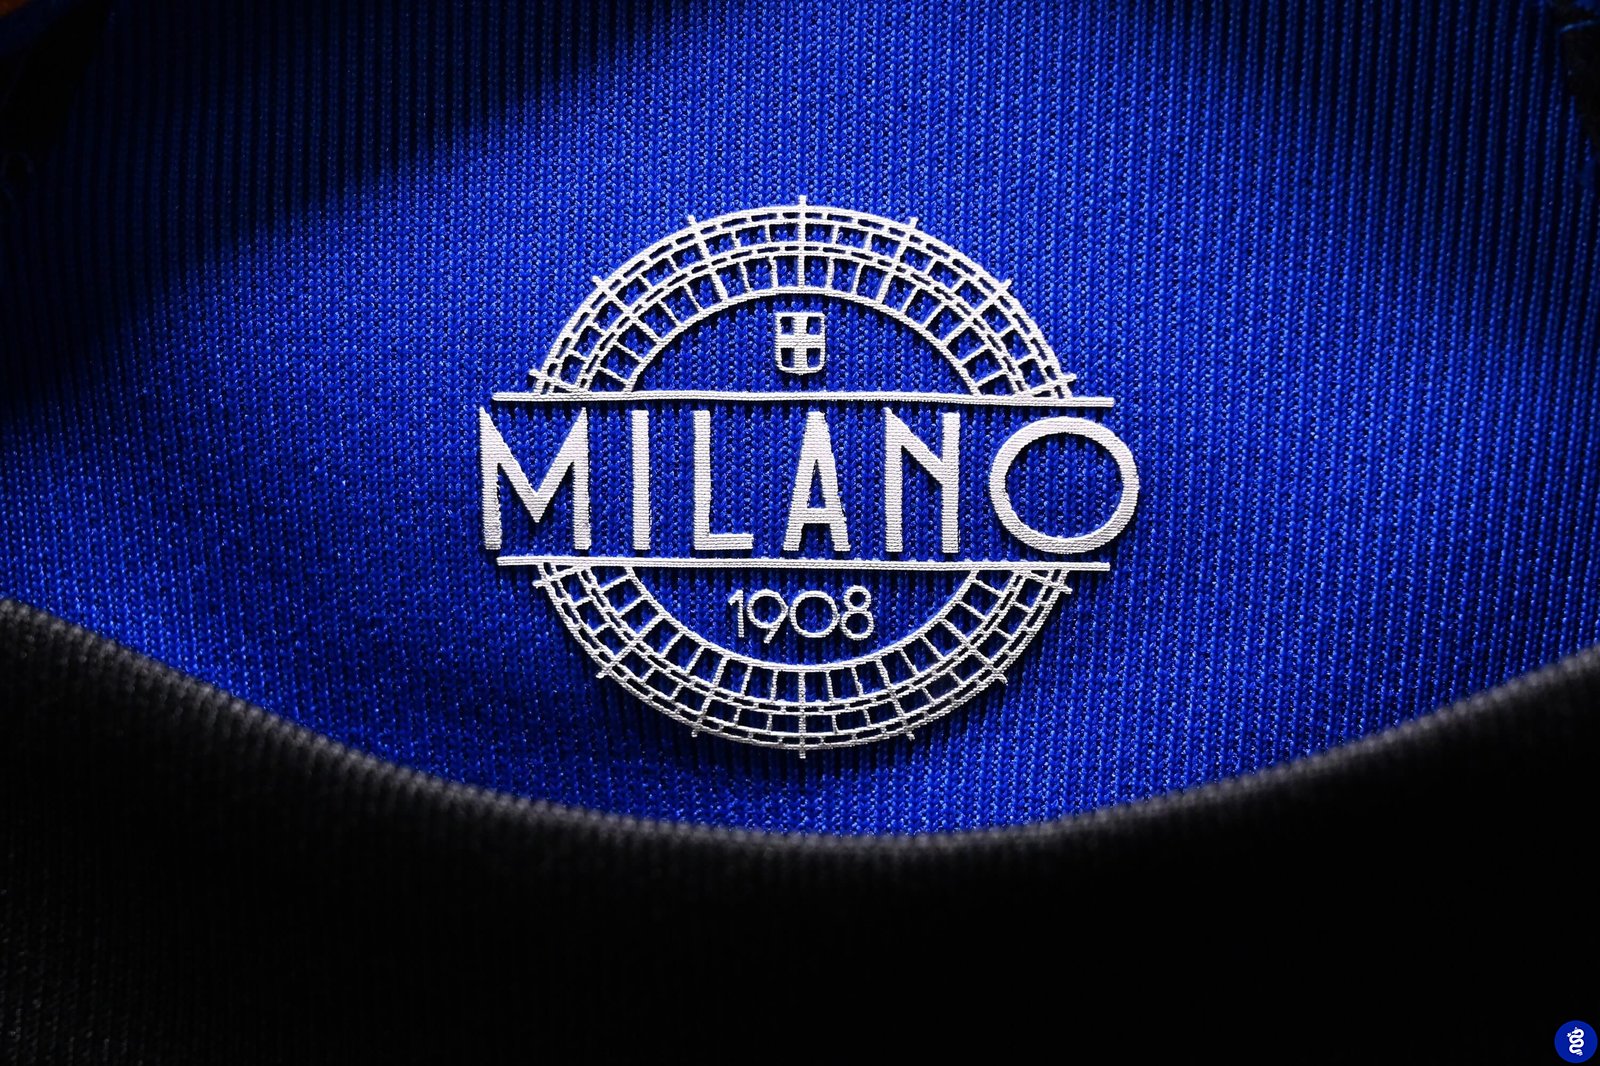 Milano 1908 - Maillot Inter 2022/2023